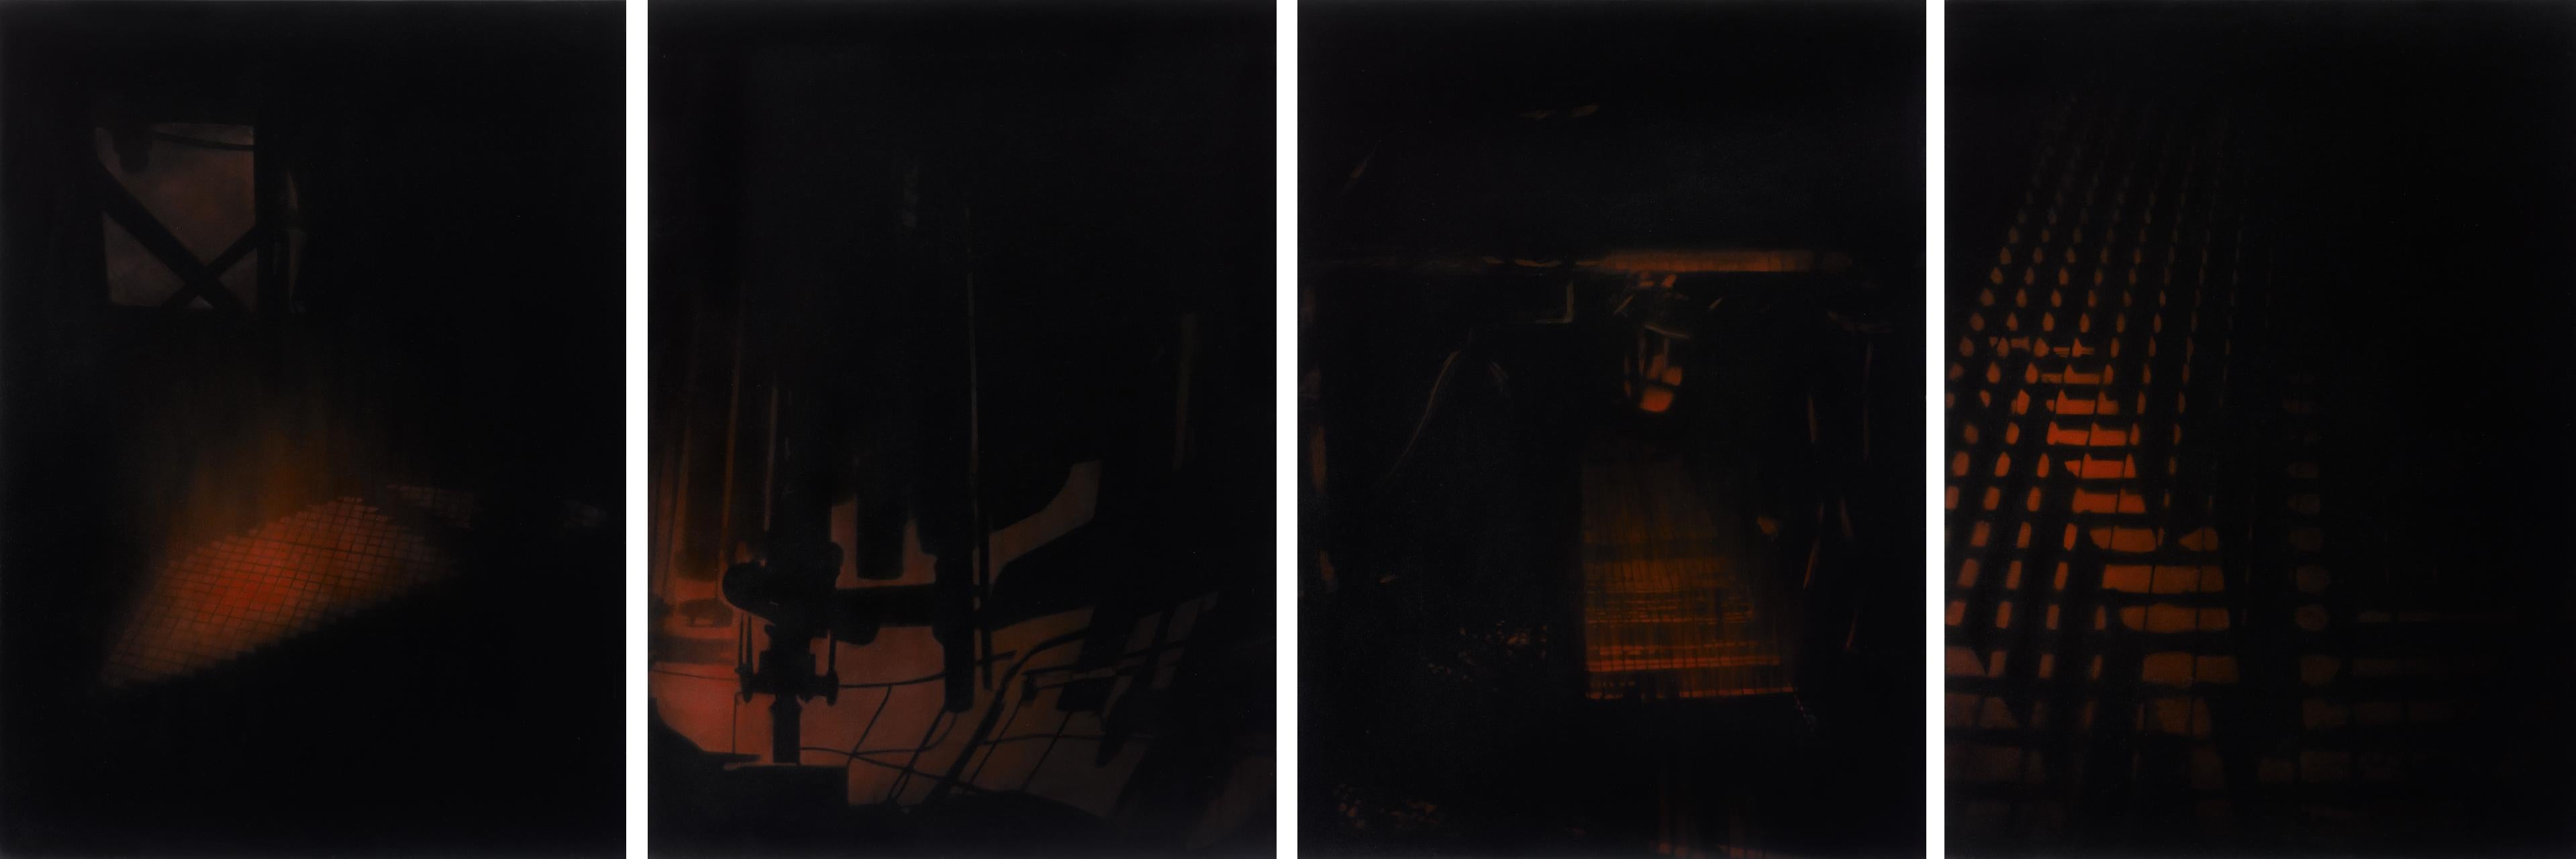 Set Ines I, II, III et IV. Peintures abstraites de la série Ines